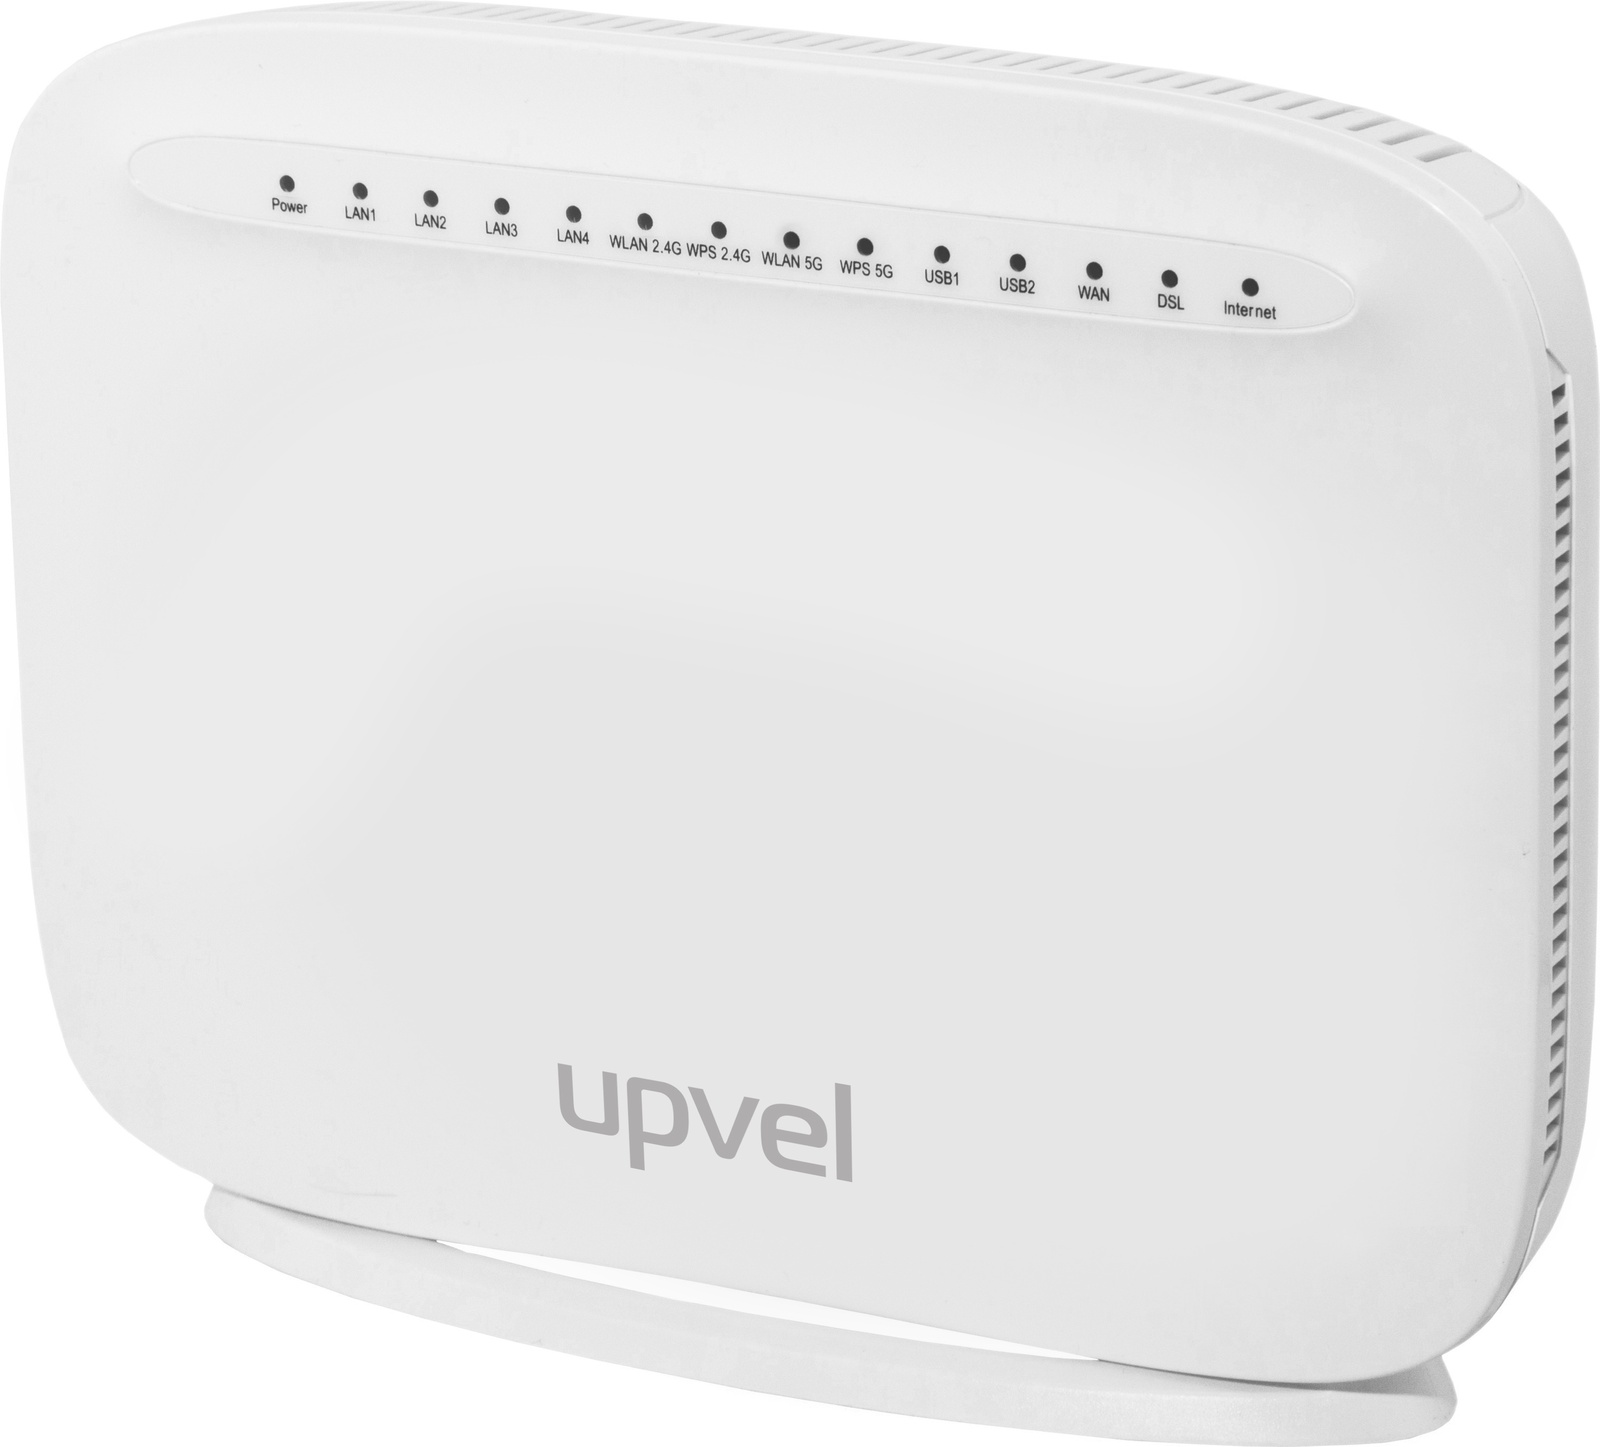 фото UPVEL UR-835VCU маршрутизатор стандарта 802.11ac 1600Мбит/с с портом VDSL/ADSL, 2 USB-порта с поддержкой 3G/LTE -модемов